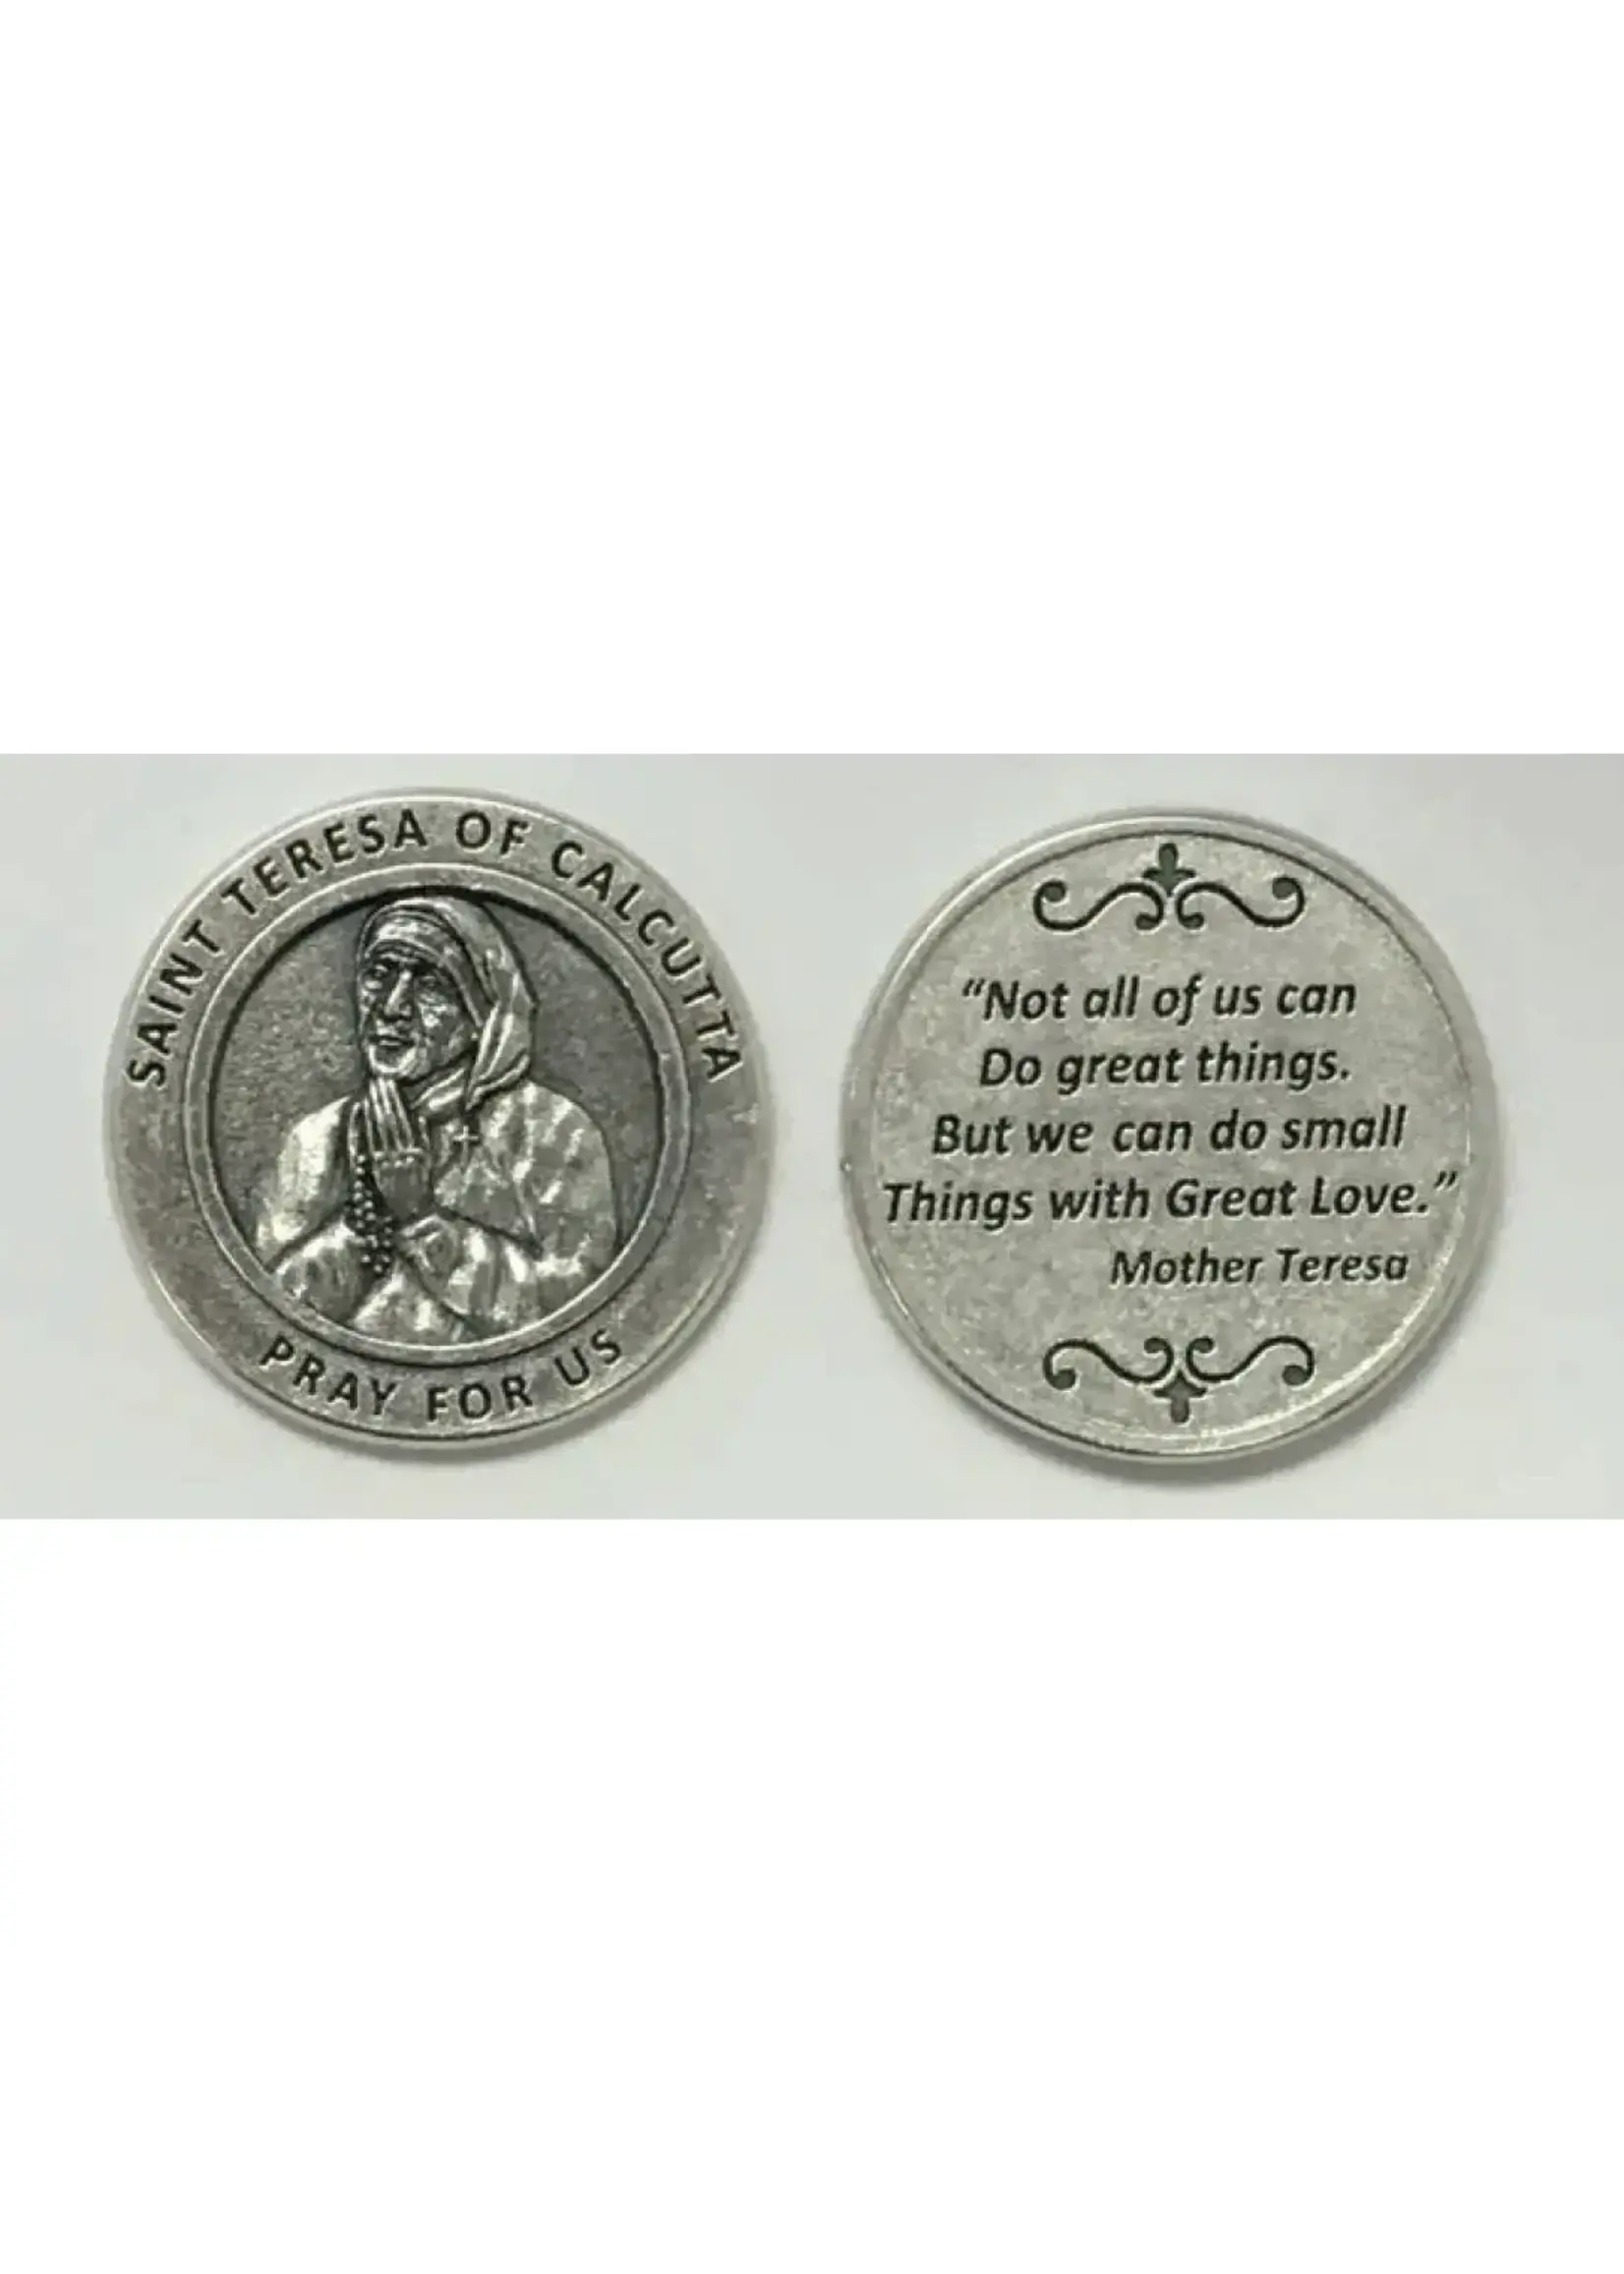 Mother Teresa of Calcutta pocket prayer token/coin